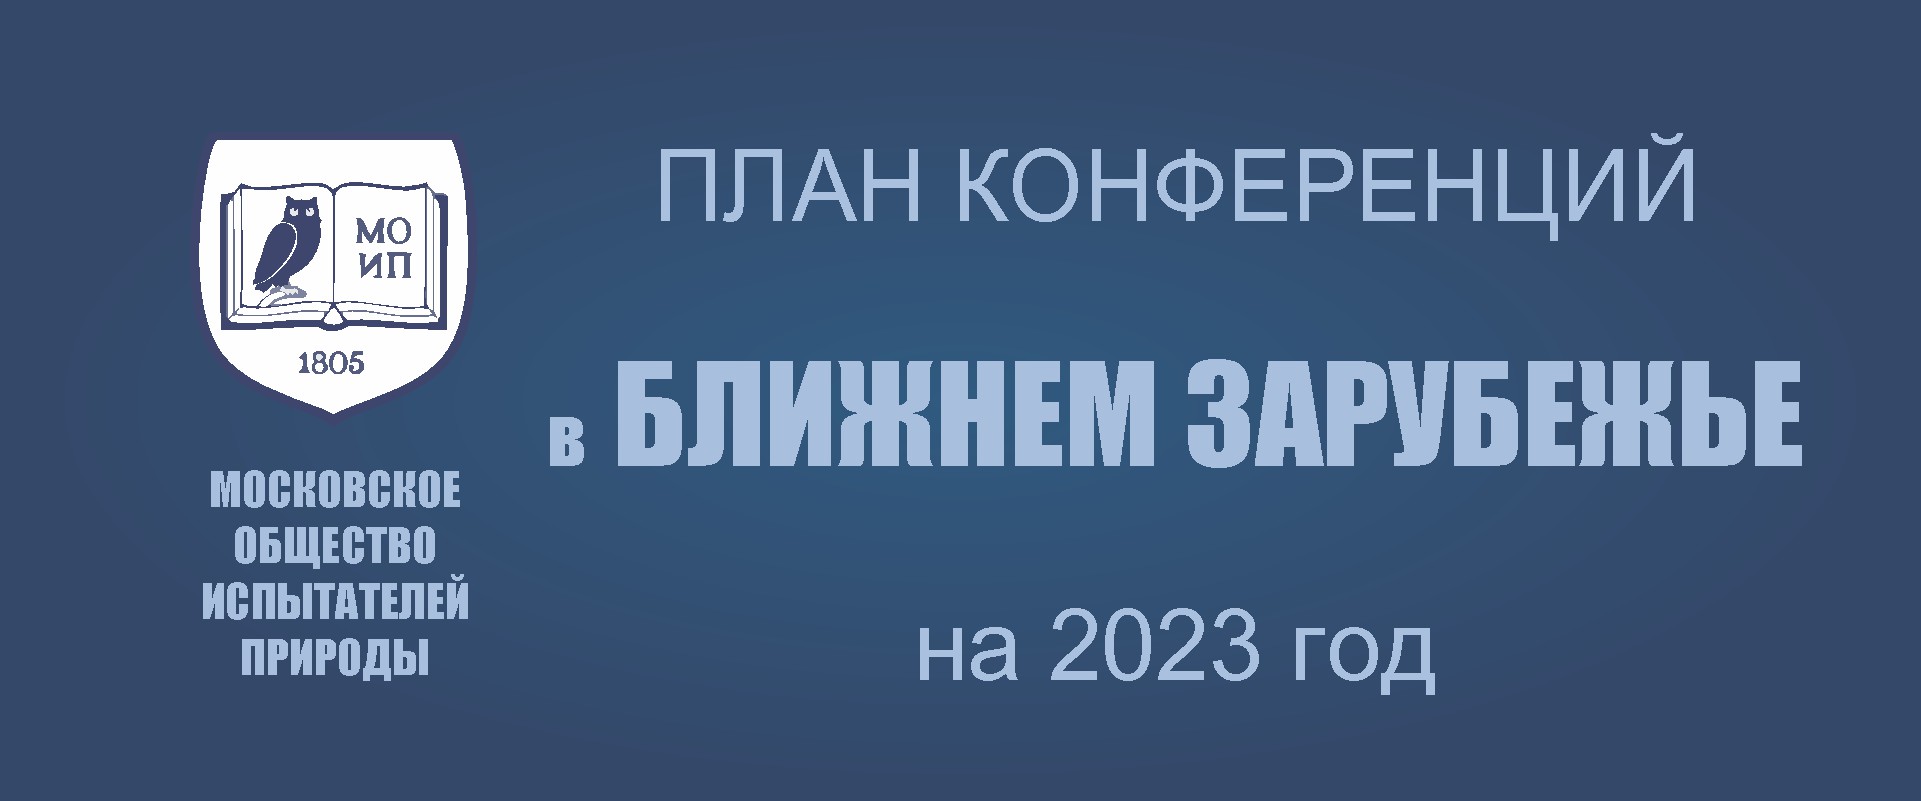 ПРЕДСТОЯЩИЕ КОНФЕРЕНЦИИ В СНГ в 2023 г.